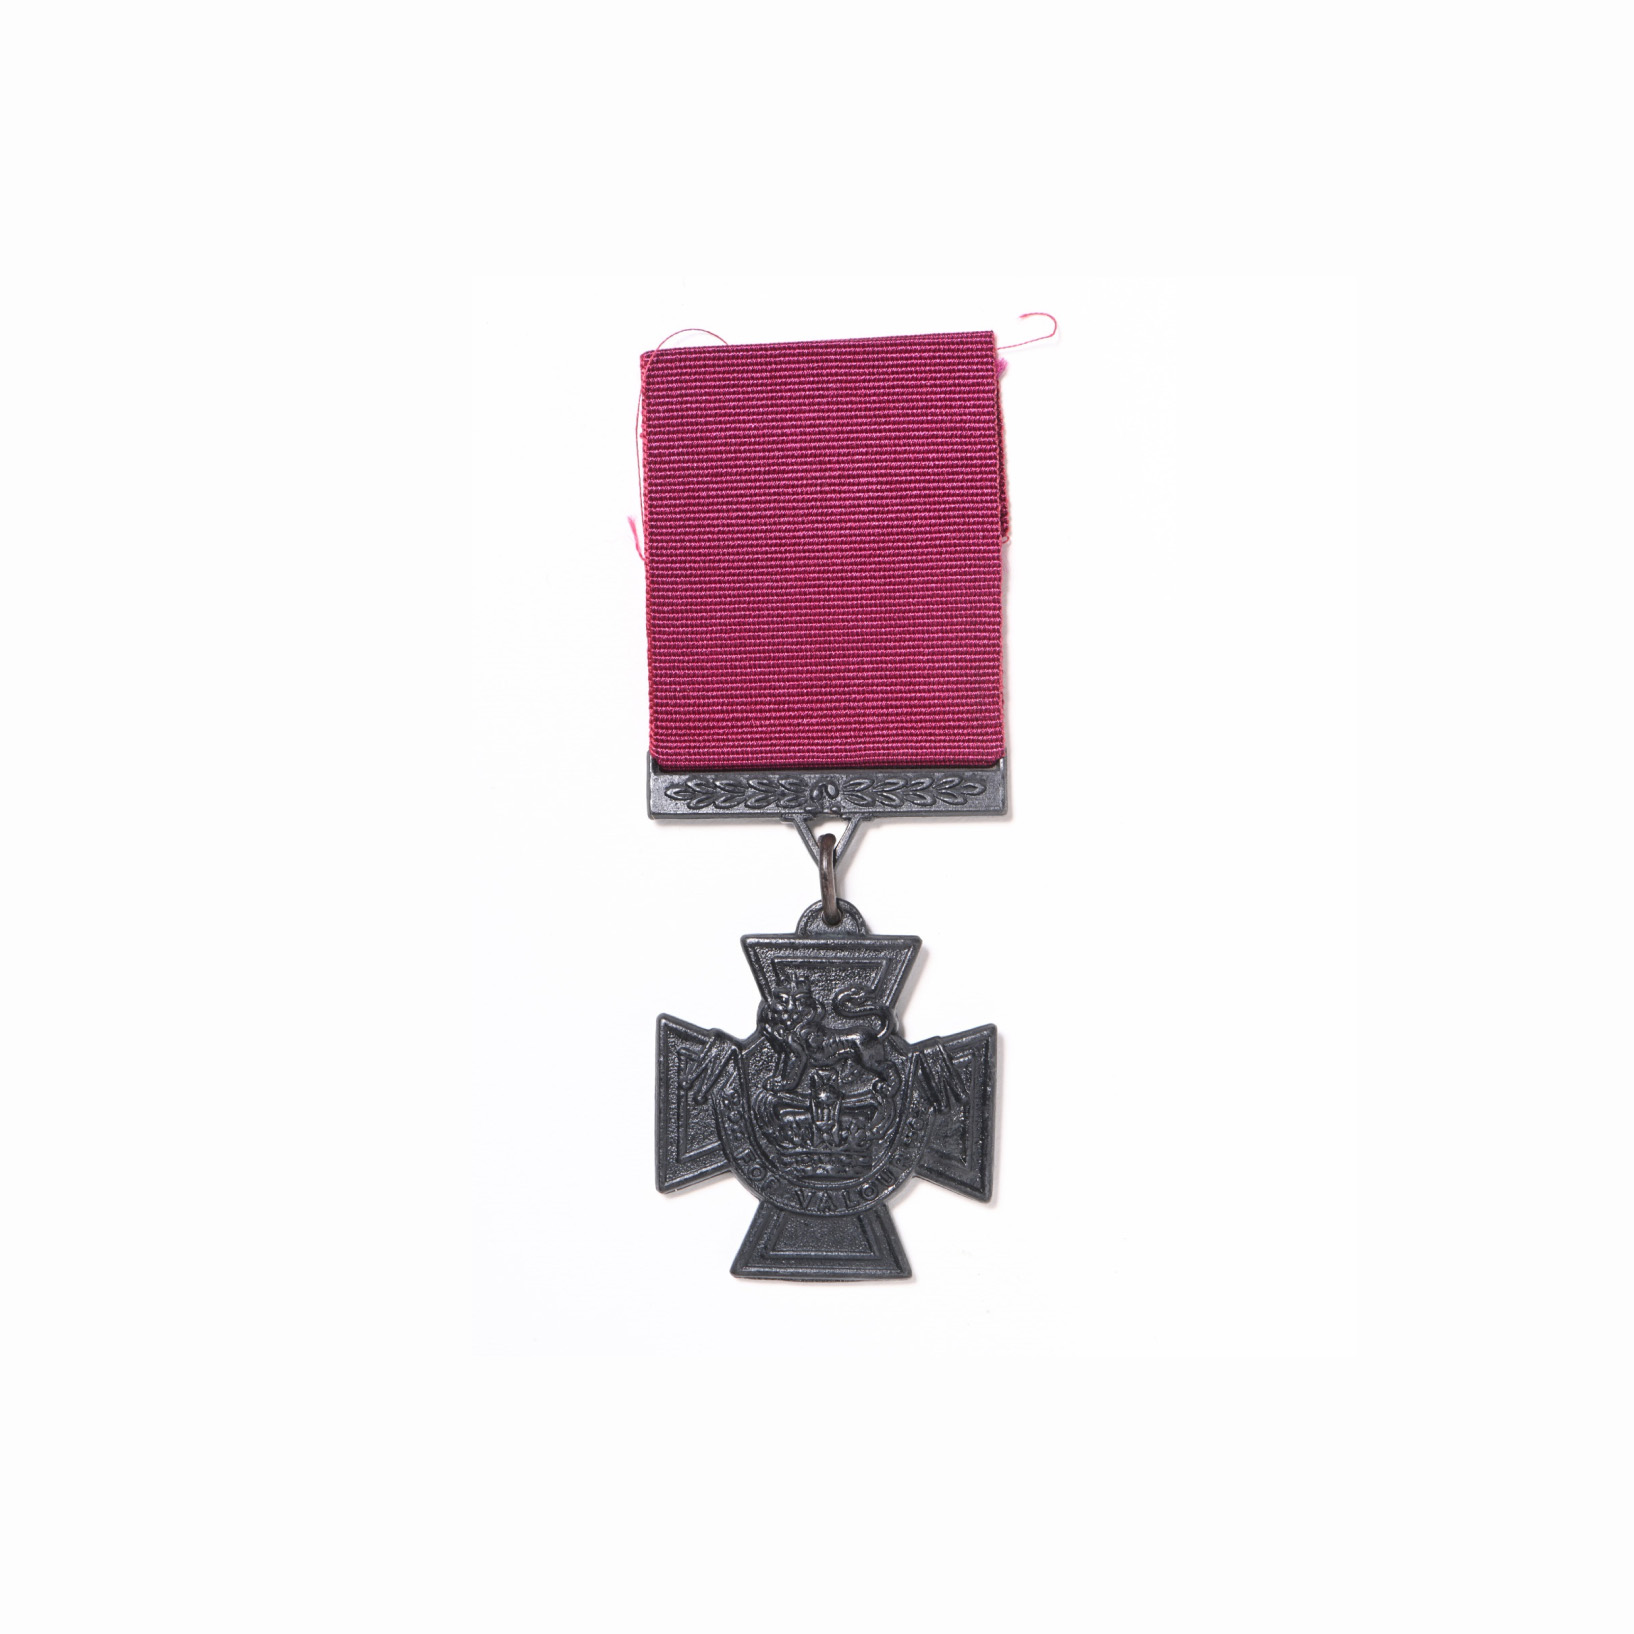 追颁给温尼伯榴弹兵营A连连士官长奥斯本（1899-1941）的维多利亚十字勋章（复制品）